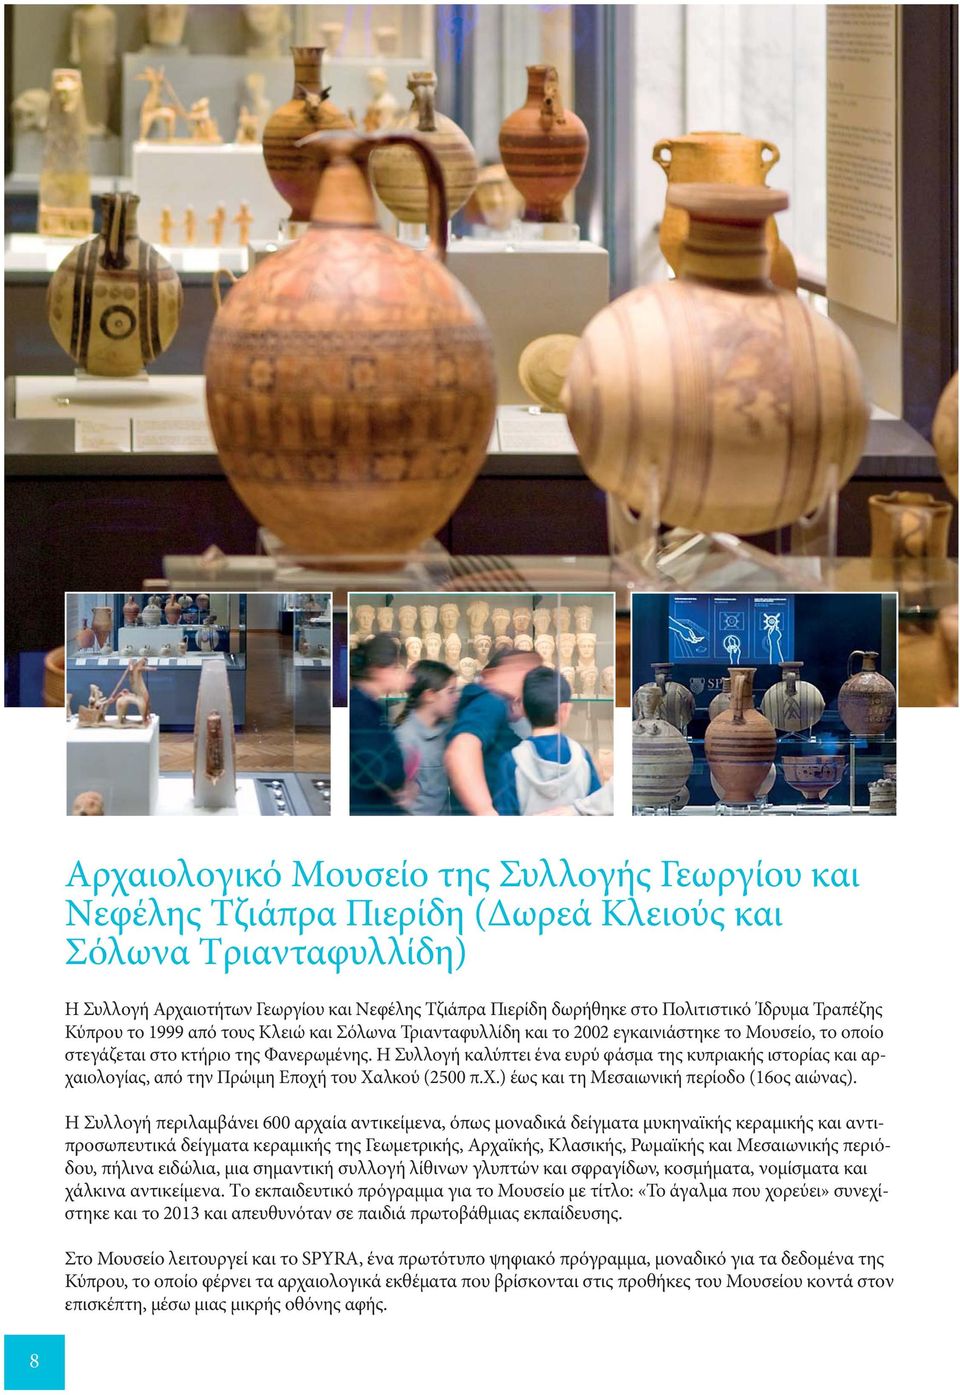 Η Συλλογή καλύπτει ένα ευρύ φάσμα της κυπριακής ιστορίας και αρχαιολογίας, από την Πρώιμη Eποχή του Xαλκού (2500 π.x.) έως και τη Mεσαιωνική περίοδο (16ος αιώνας).